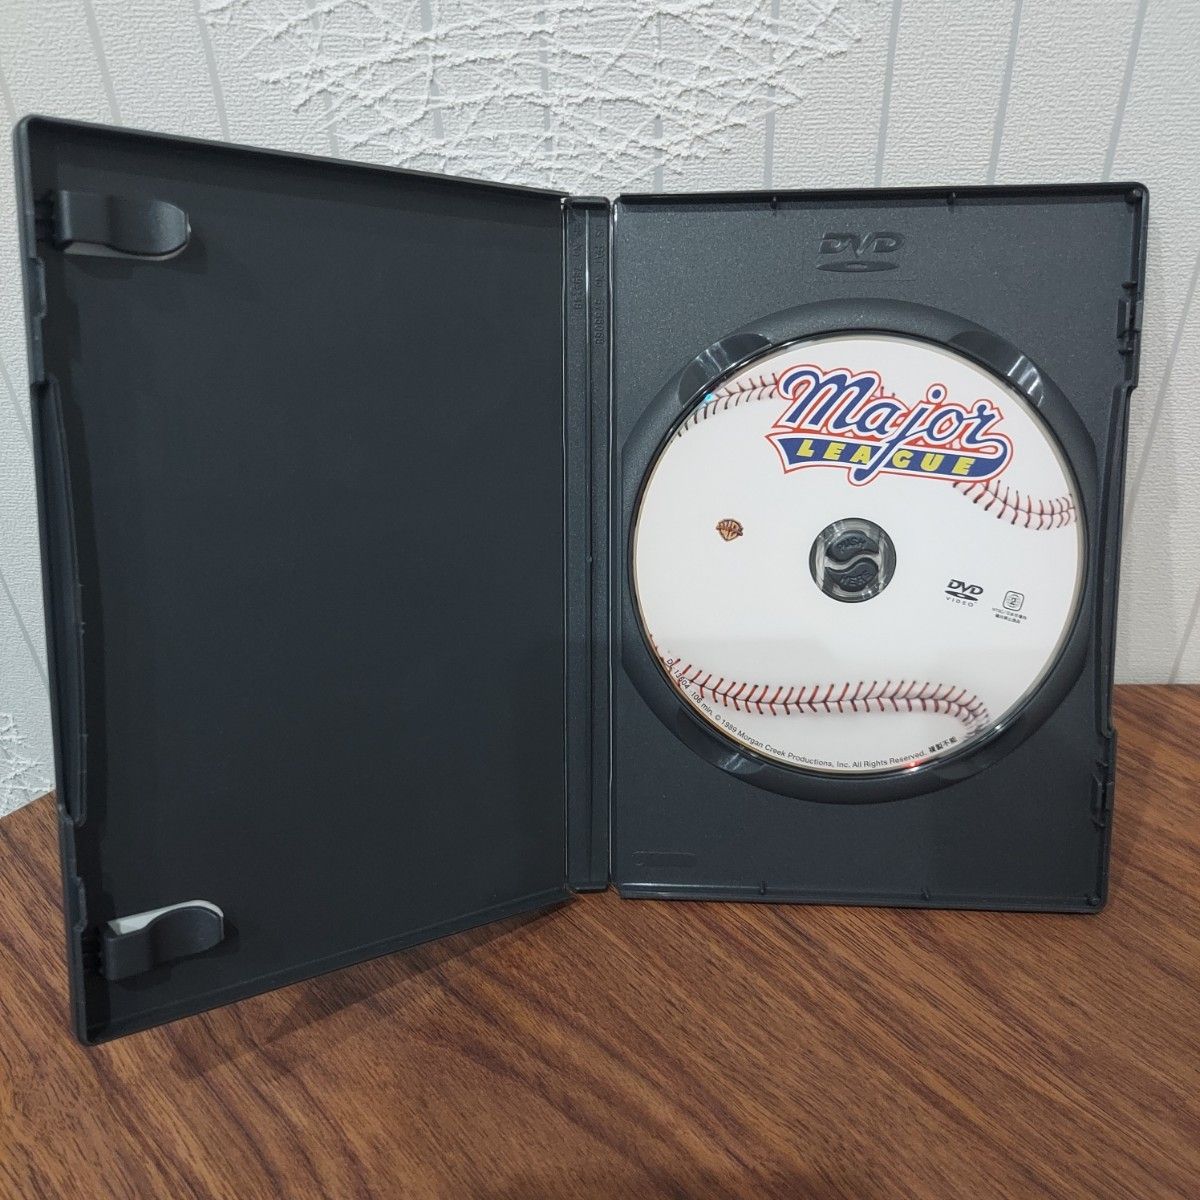 メジャーリーグ DVD セル版 映画 洋画 野球